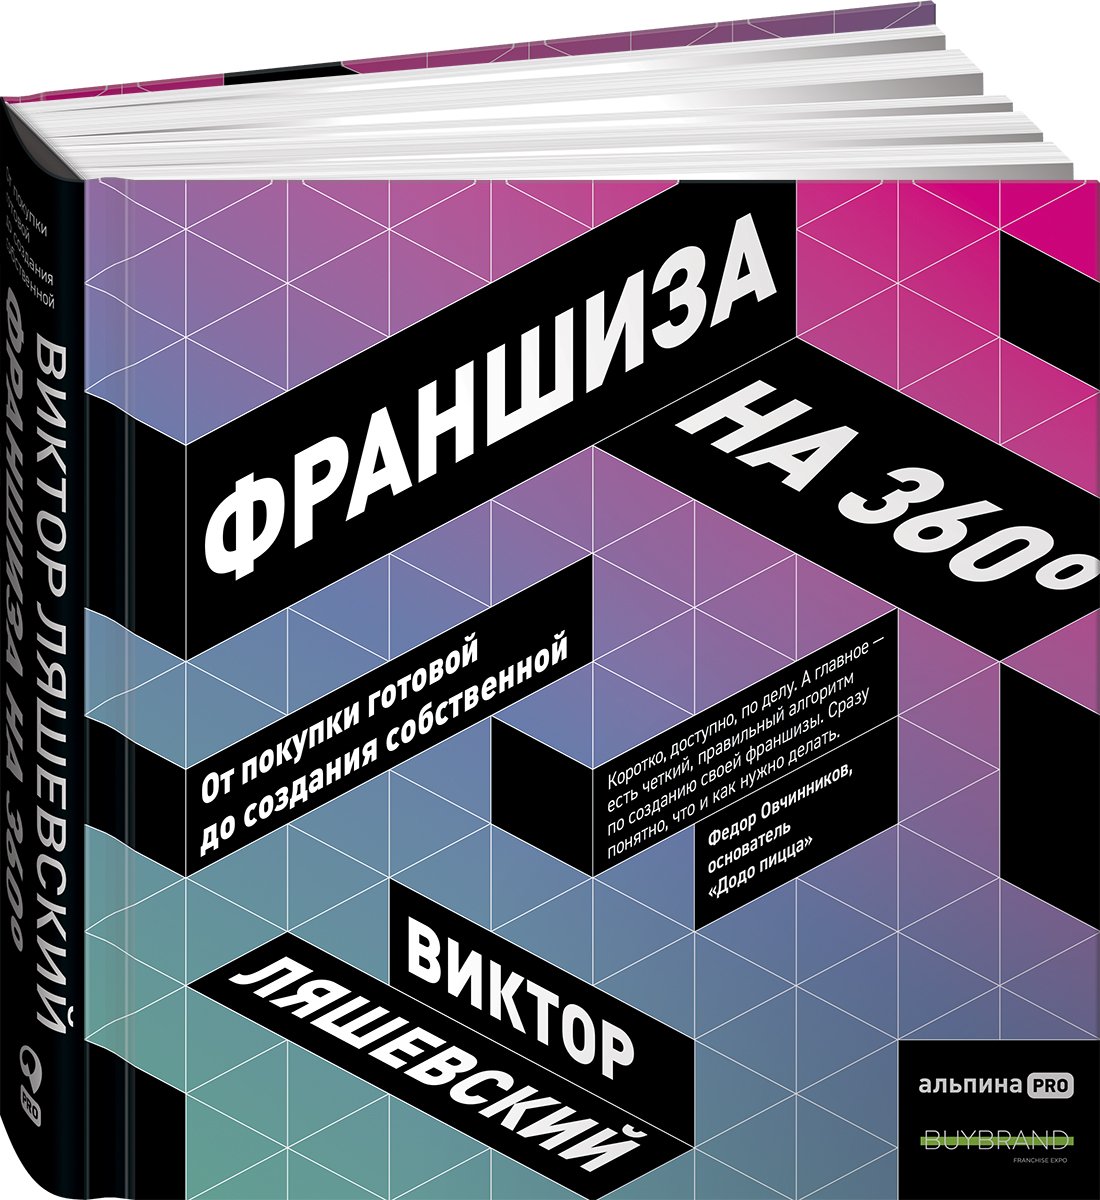 Ляшевский В. - Франшиза на 360° : От покупки готовой до создания собственной